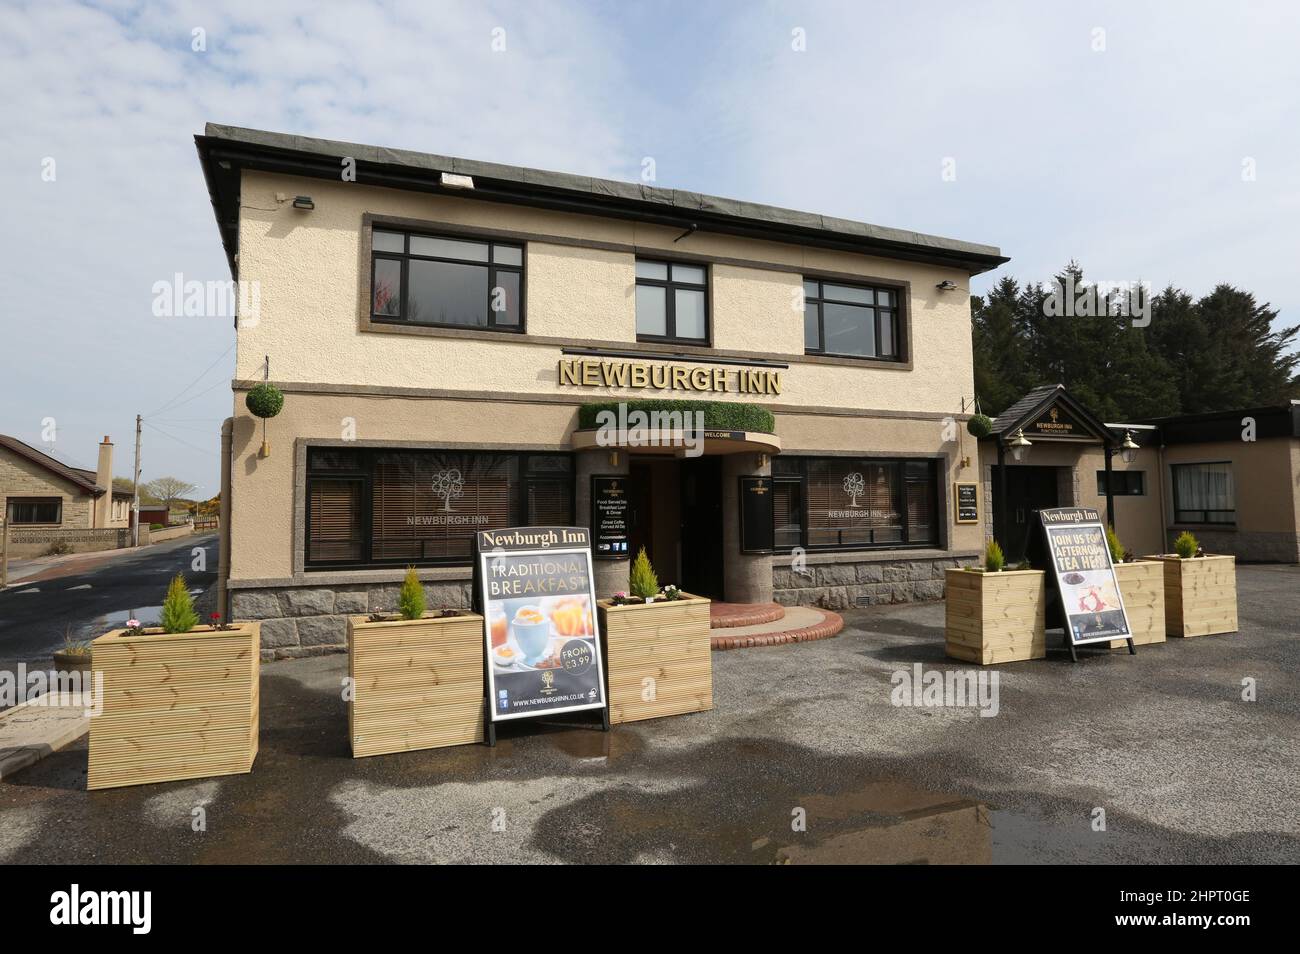 El Newburgh Inn pub y hotel en la localidad costera de Newburgh, Aberdeenshire, Escocia Foto de stock